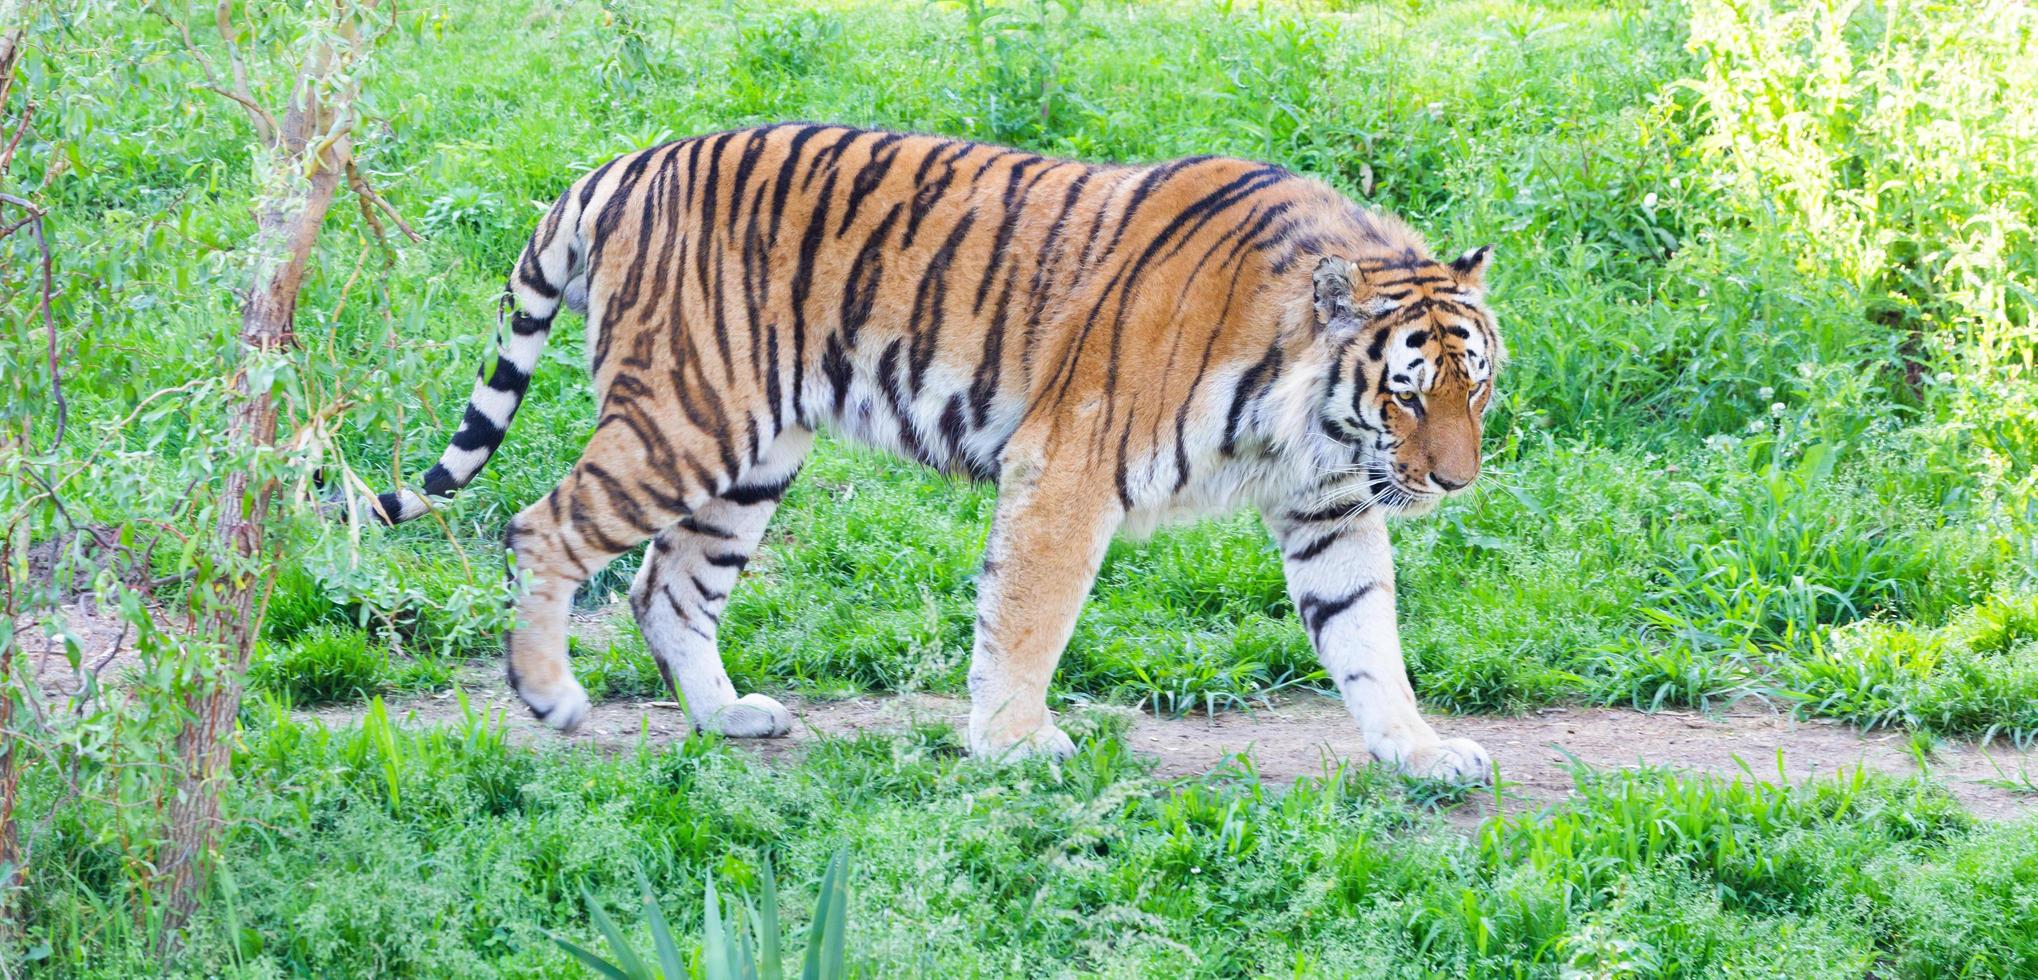 tigre en un zoológico de vida silvestre, uno de los carnívoros más grandes de la naturaleza. foto